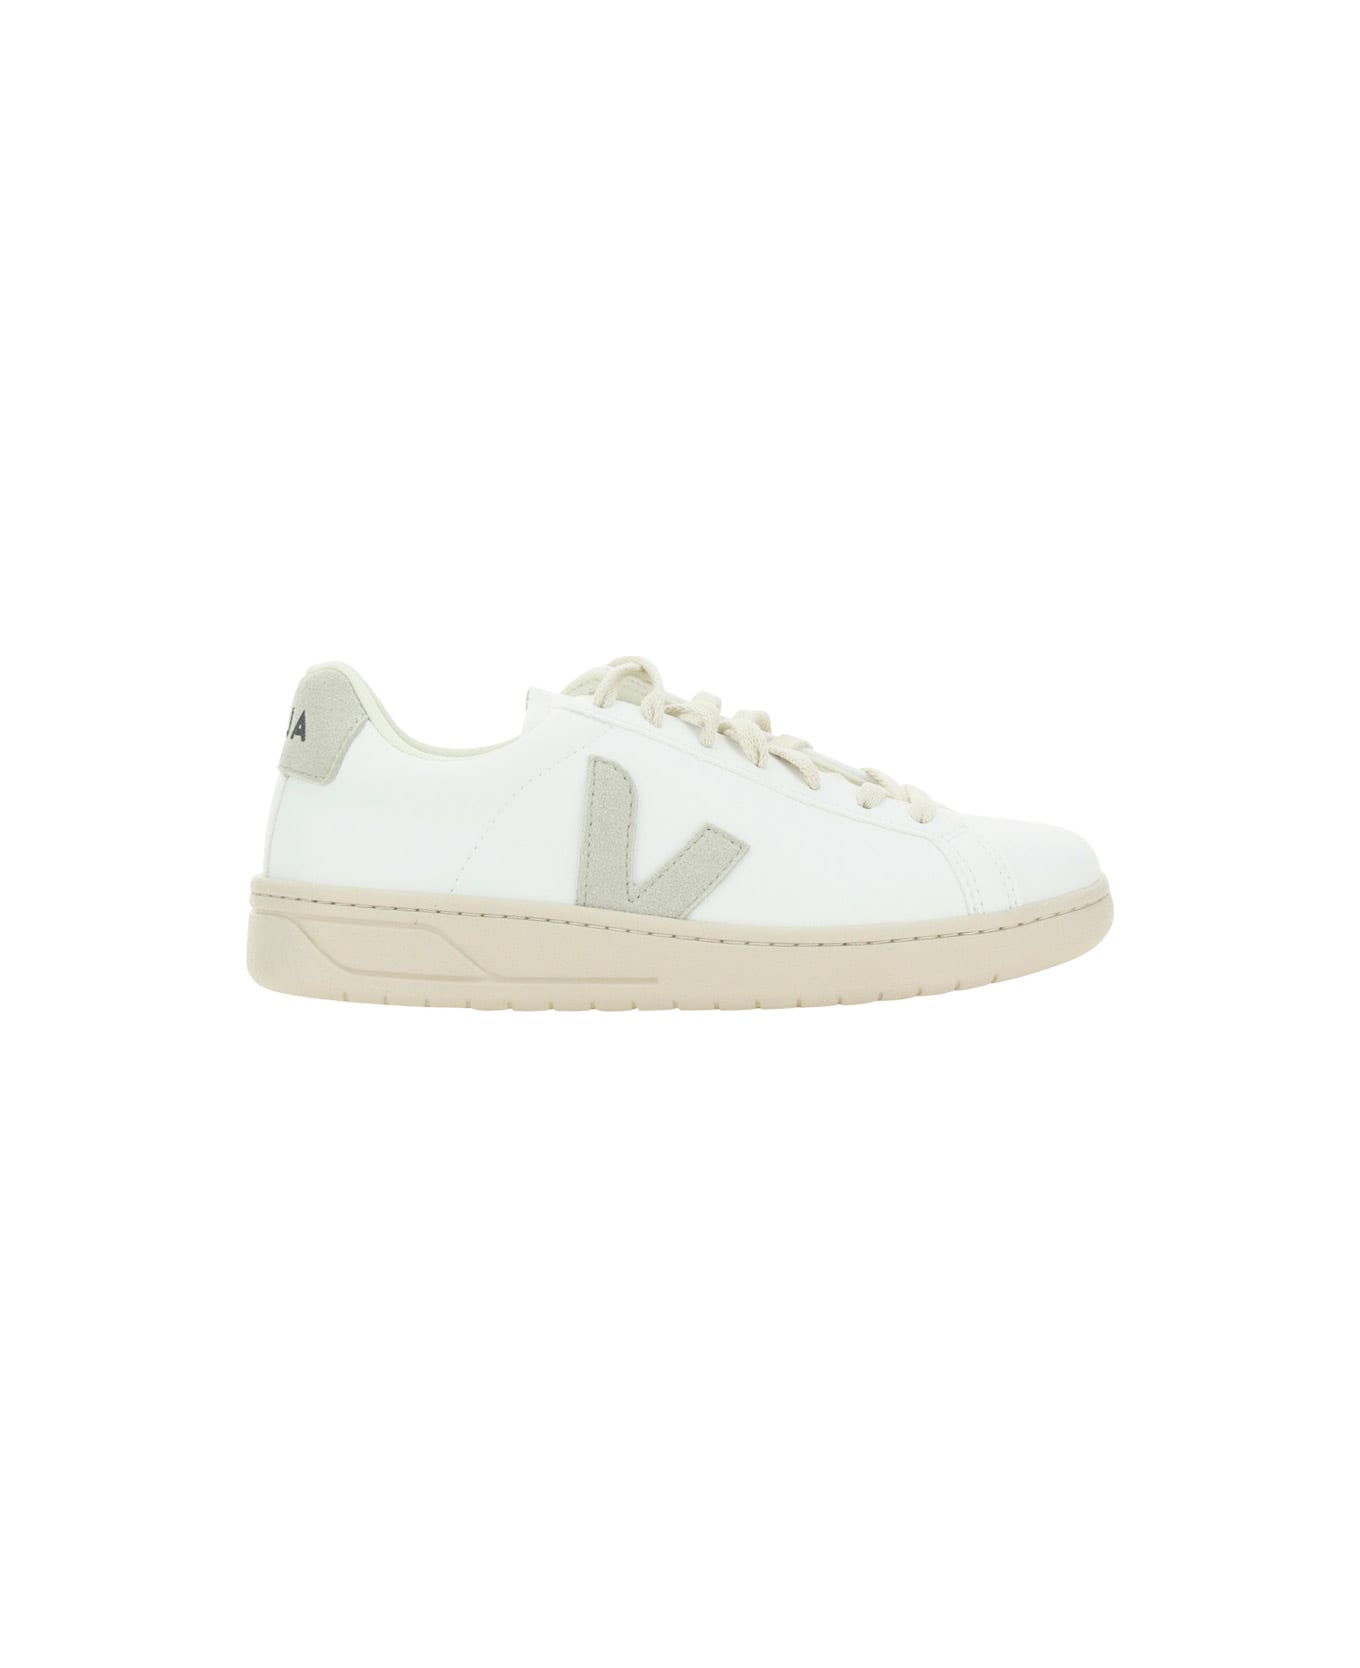 Veja Urca Cwl Sneakers - White Natural